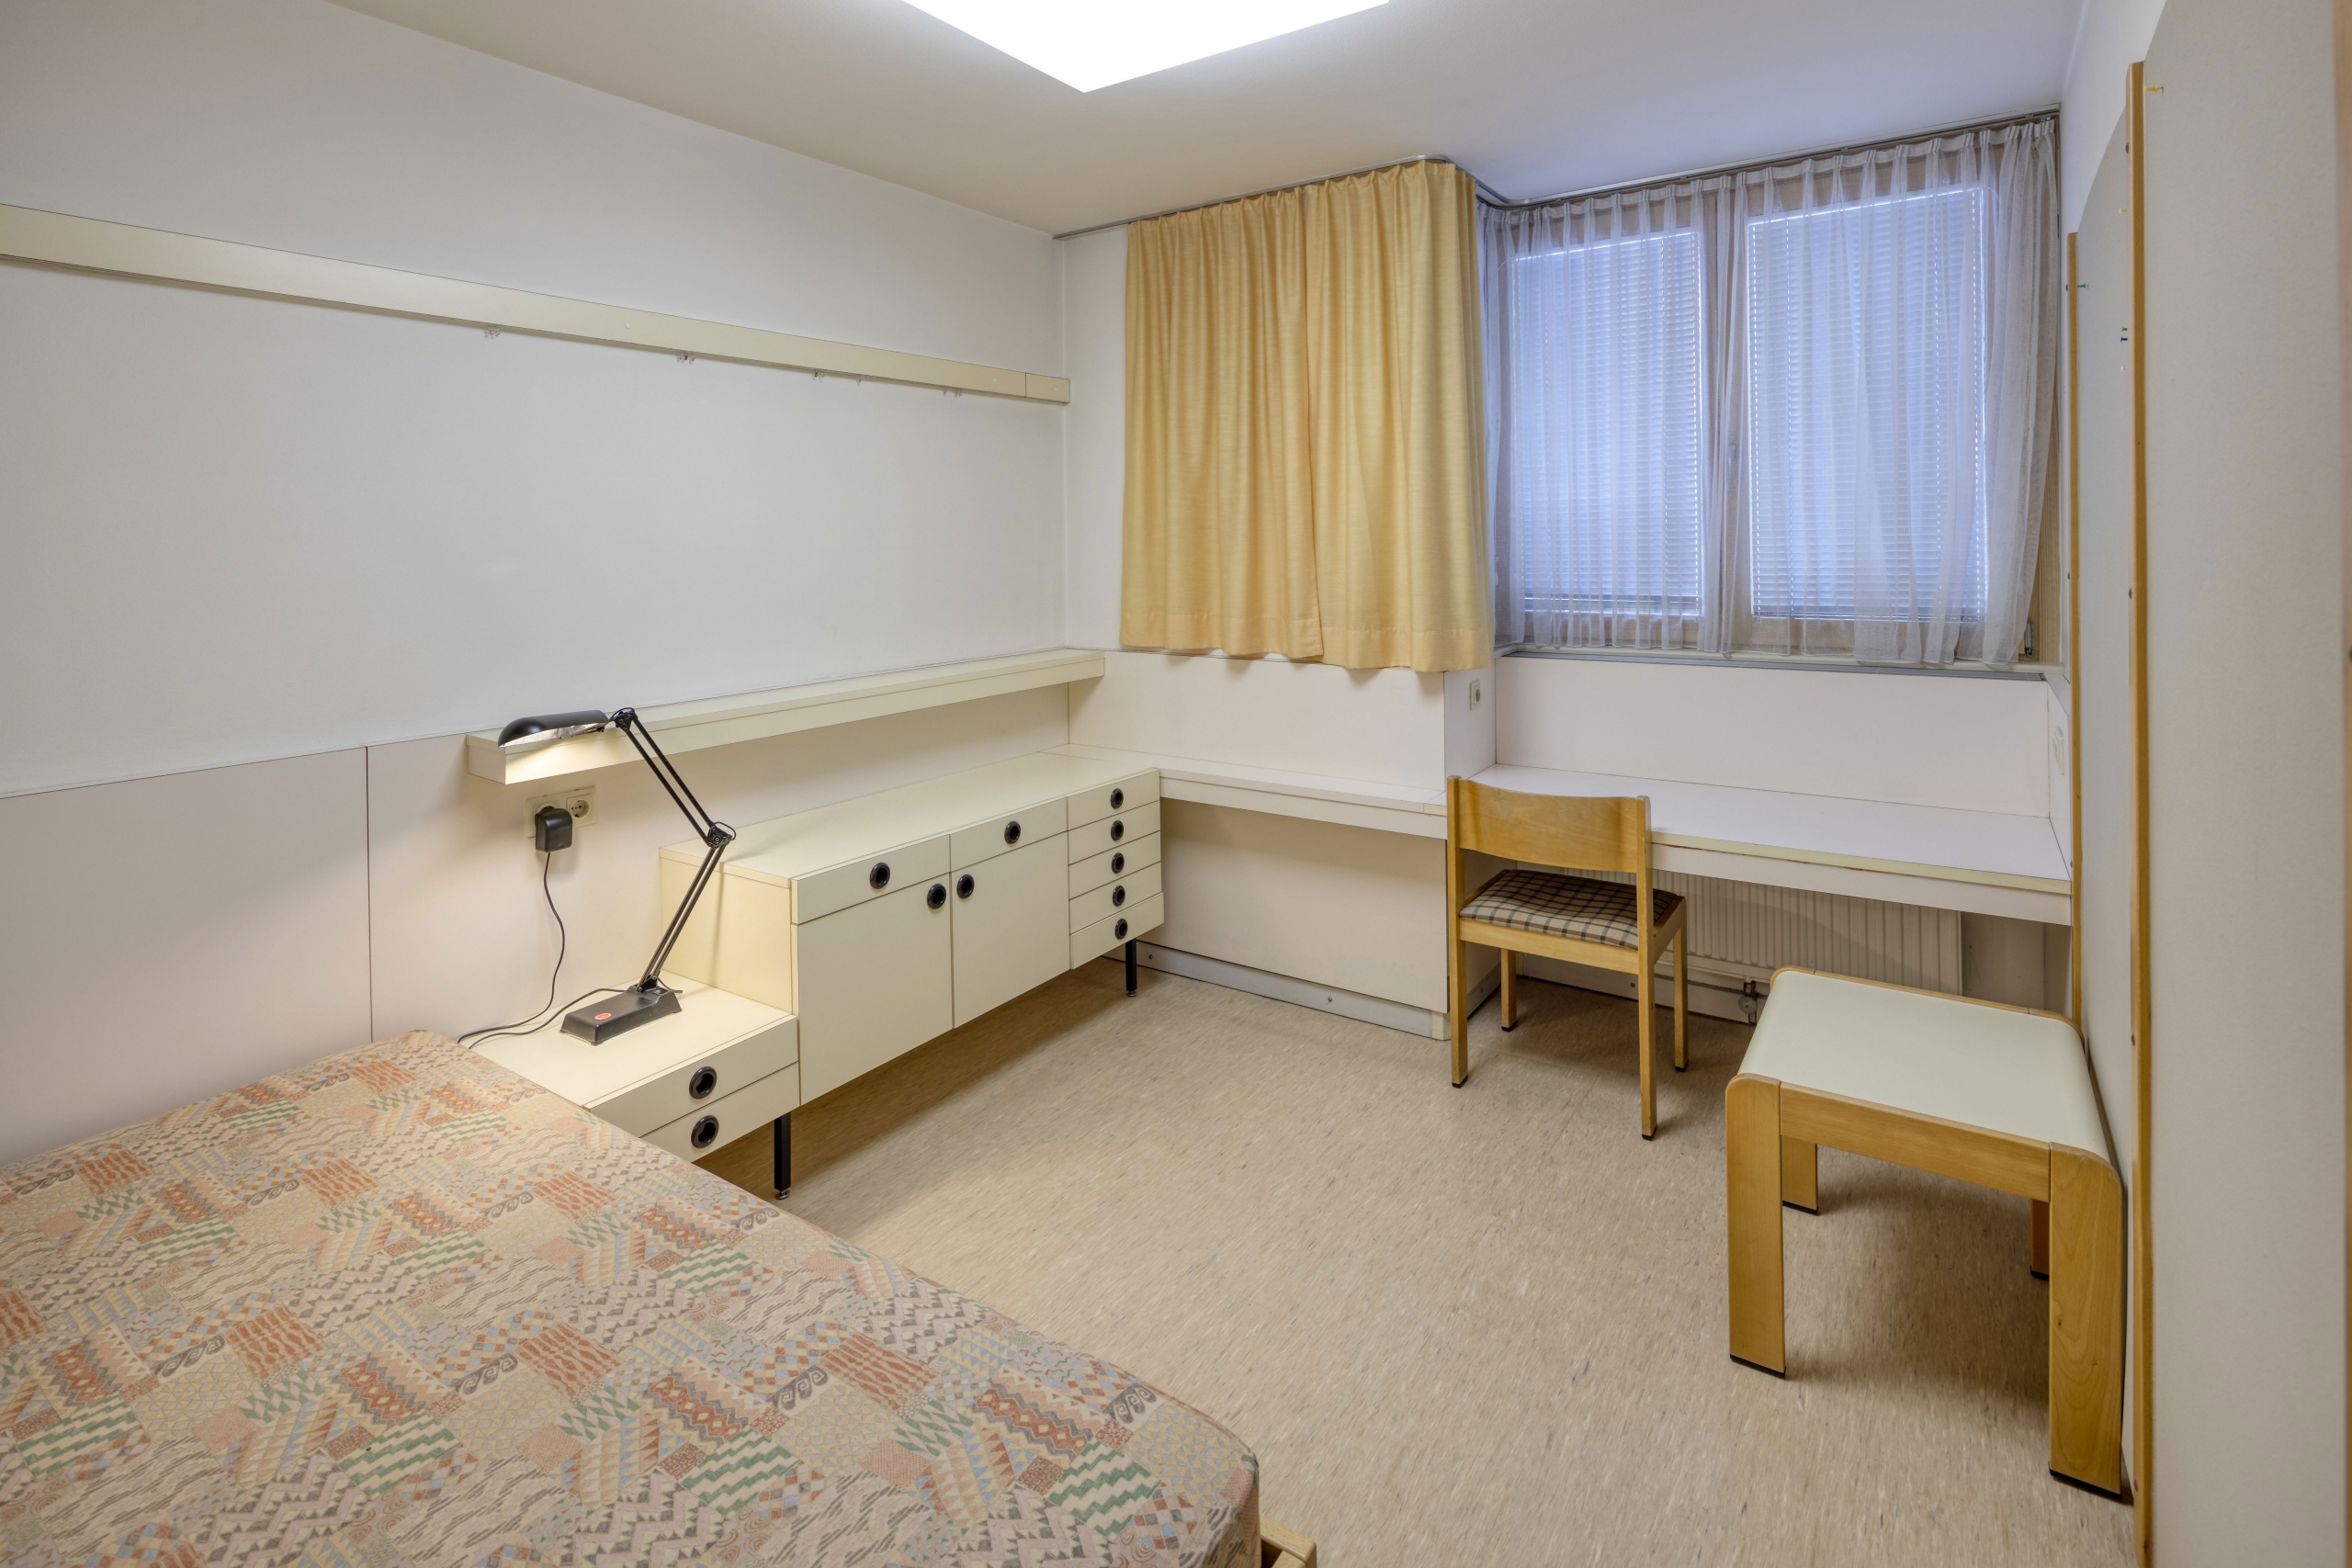 Zimmer des Student*innen-Wohnheims Campus Donaustadt ohne persönlichen Gegenständen